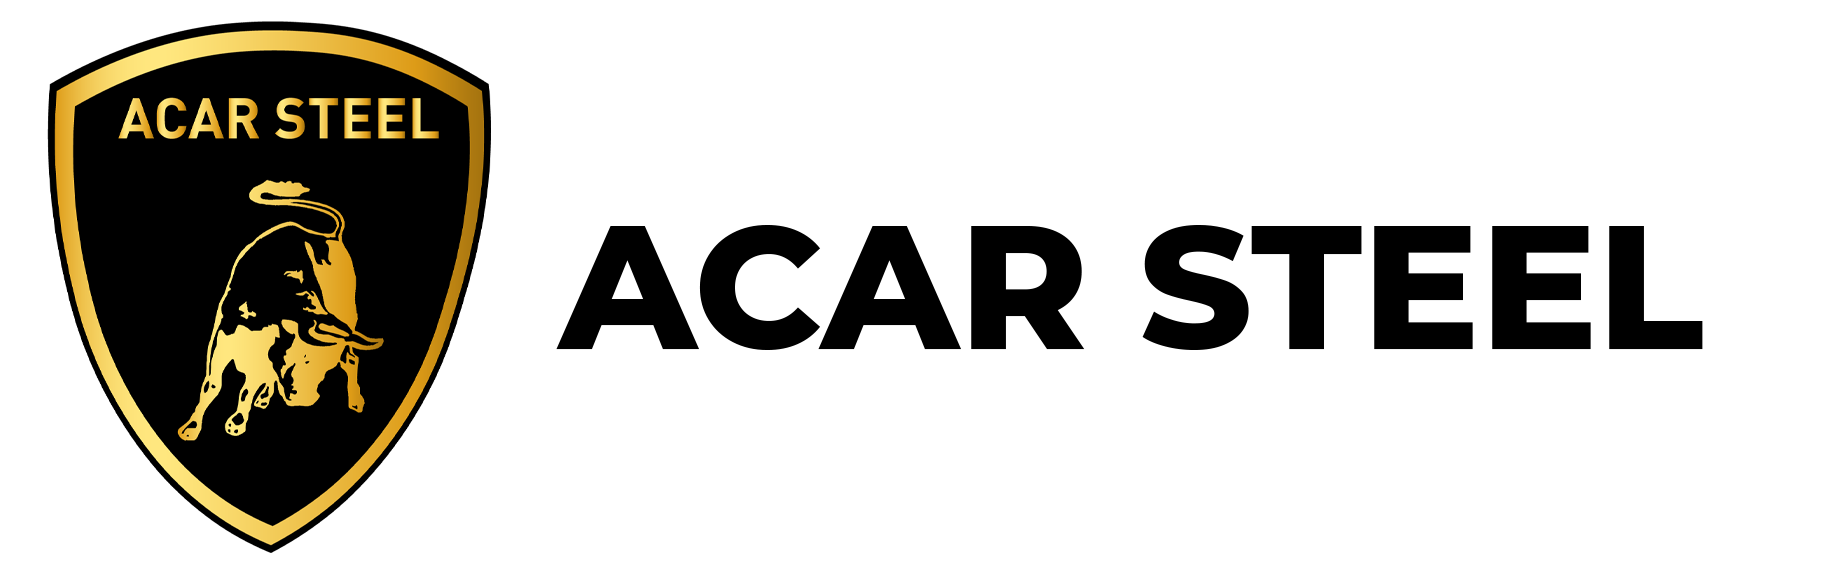 Acar Steel logo